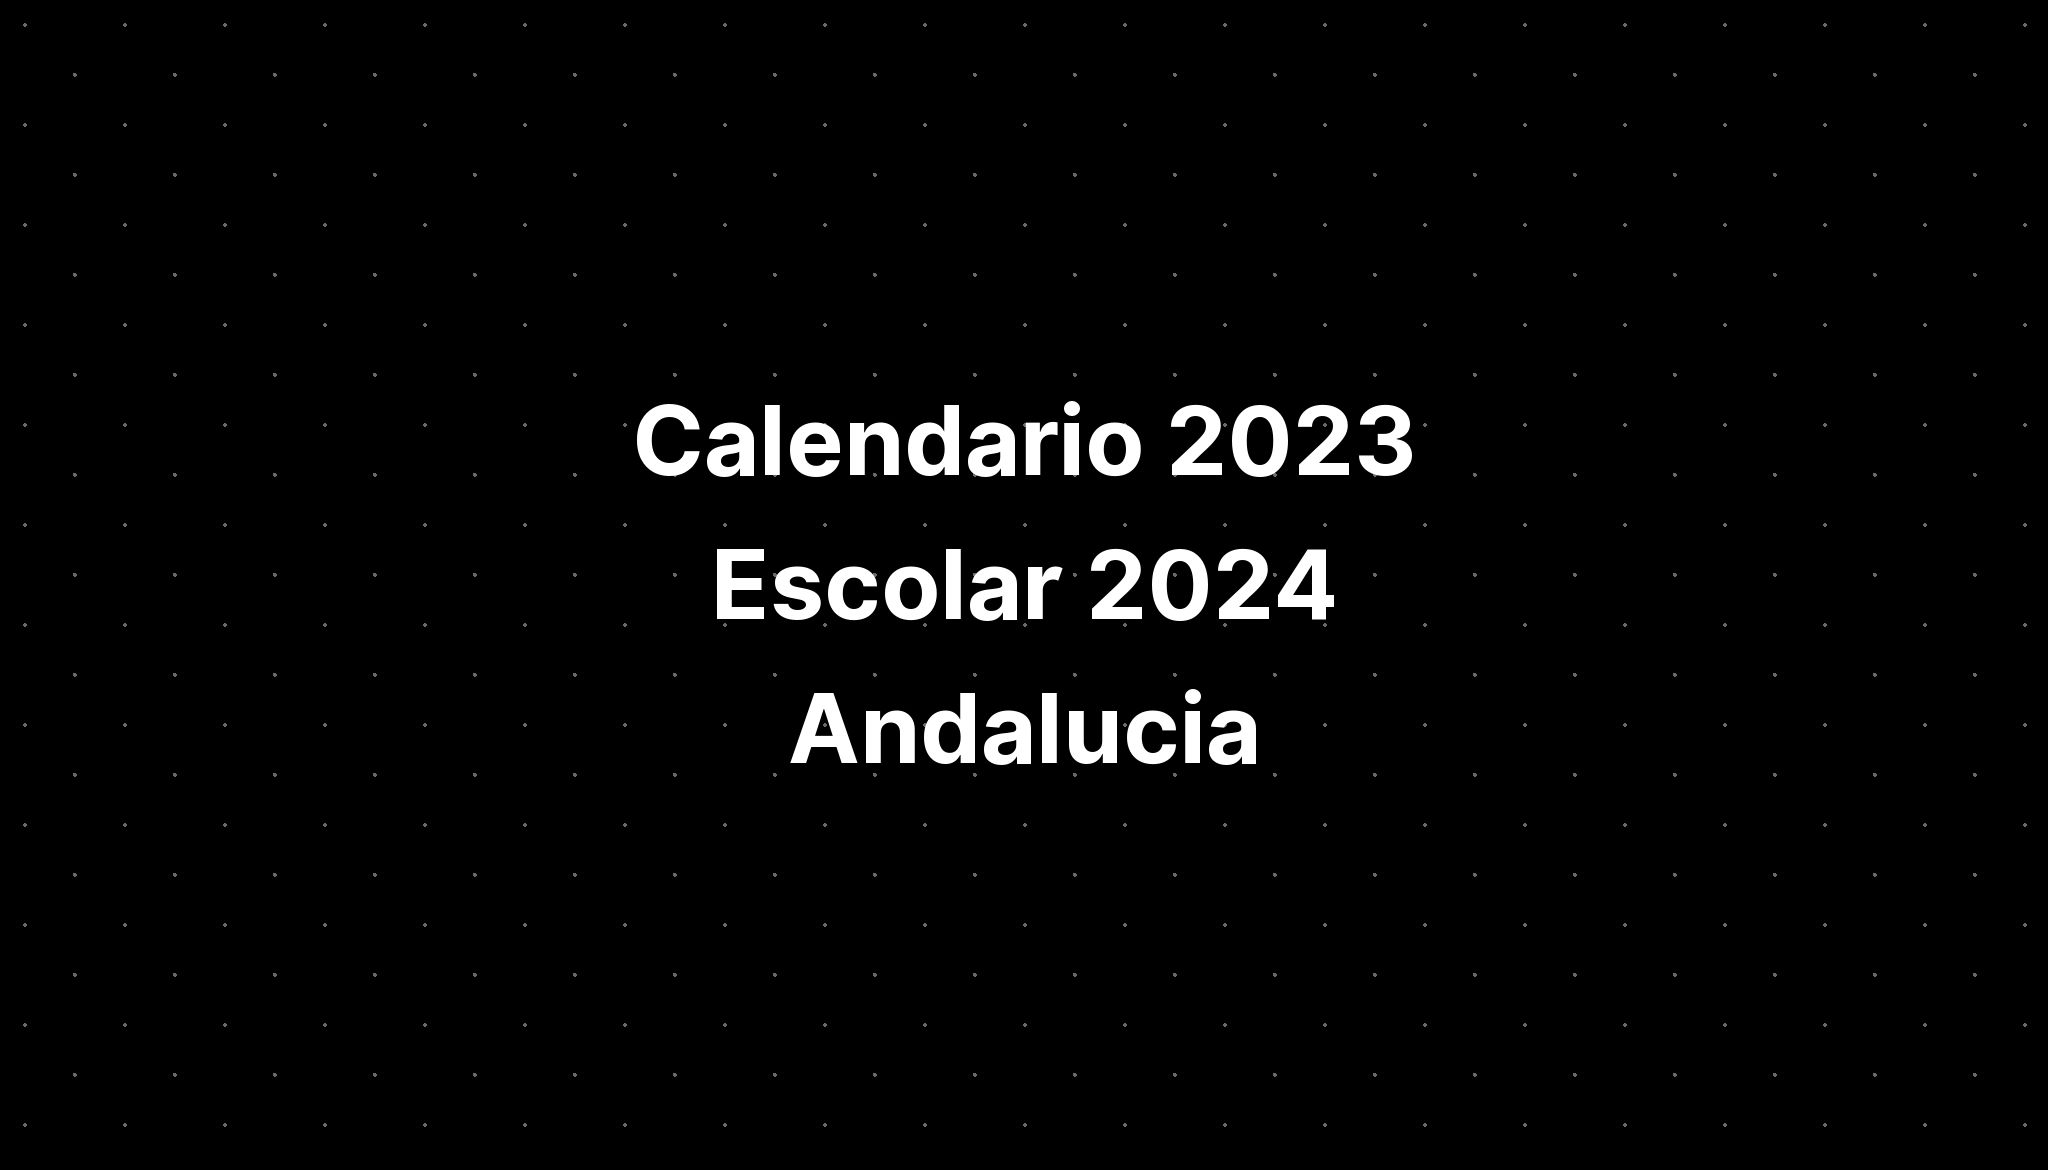 Calendario Escolar 2024 Andalucia Calendar 2024 Ireland Printable